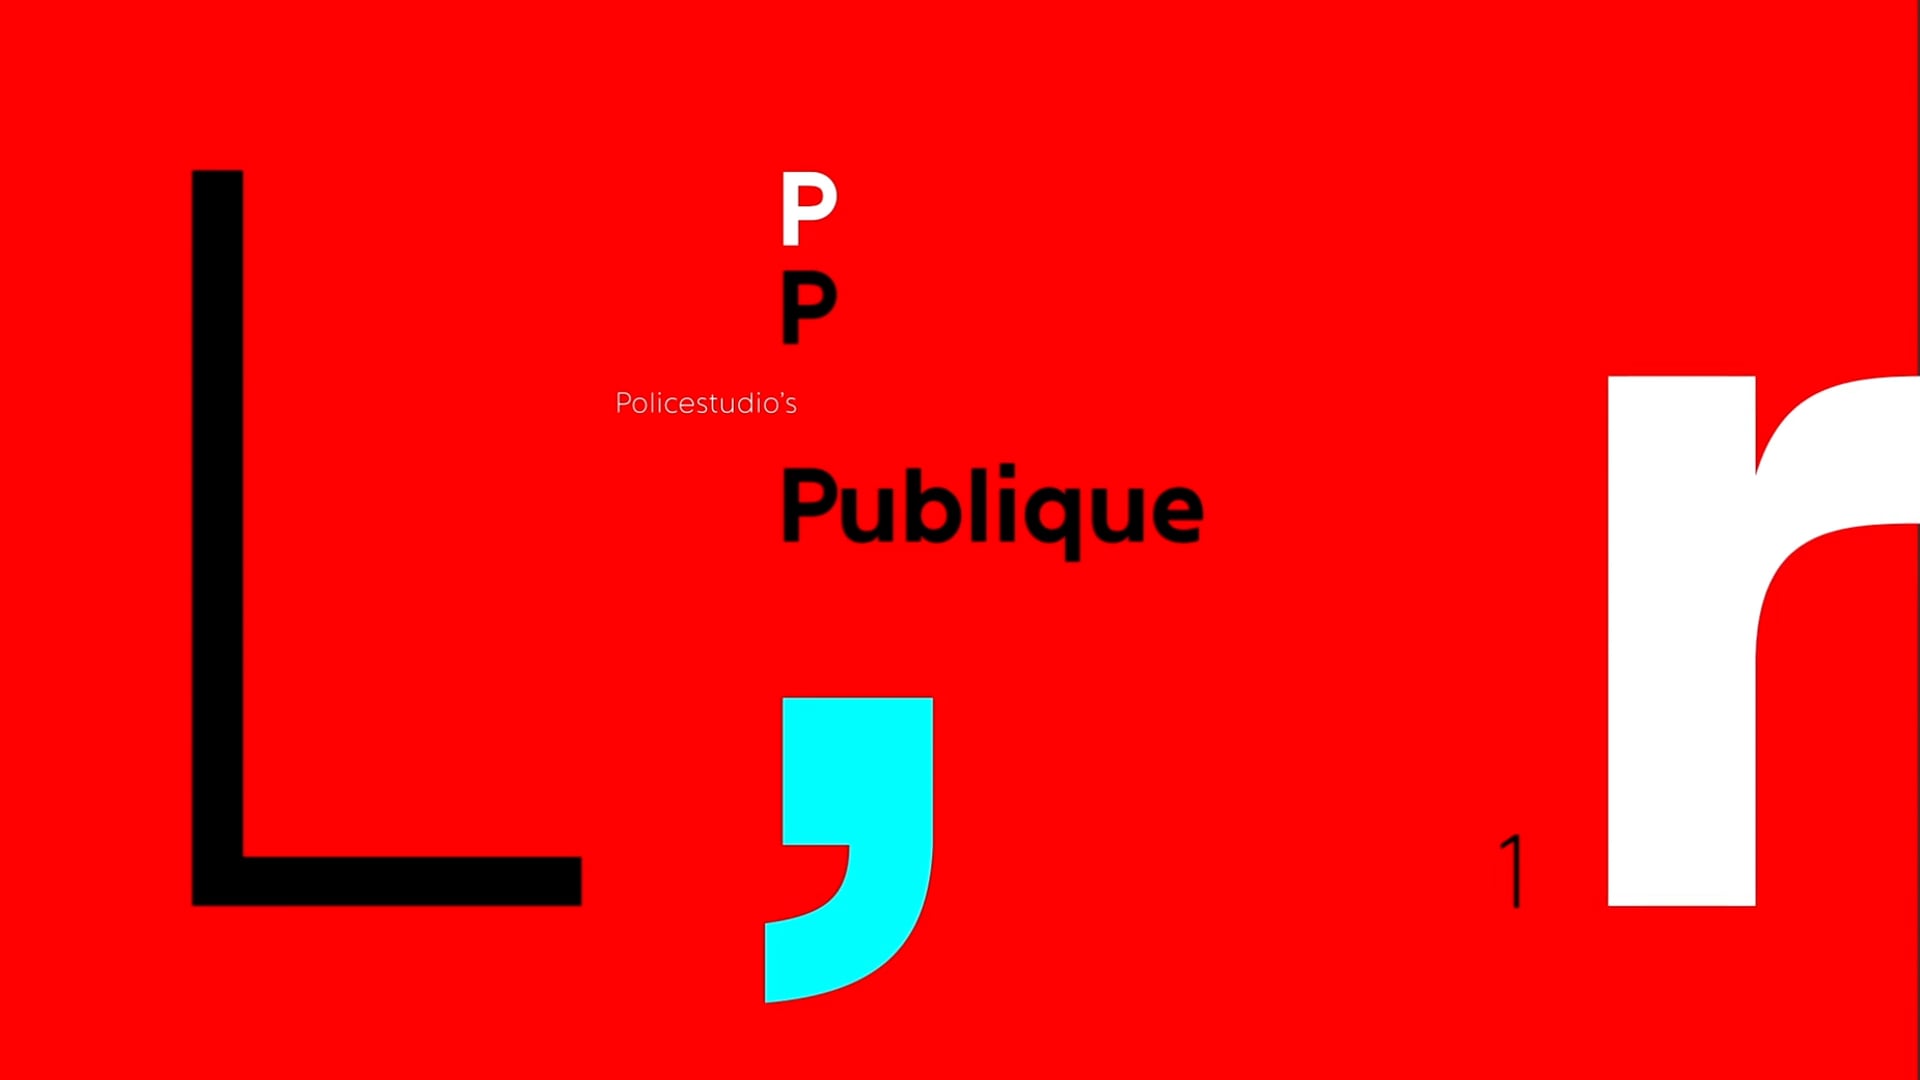 Policestudio’s Publique Animated Type Specimen.